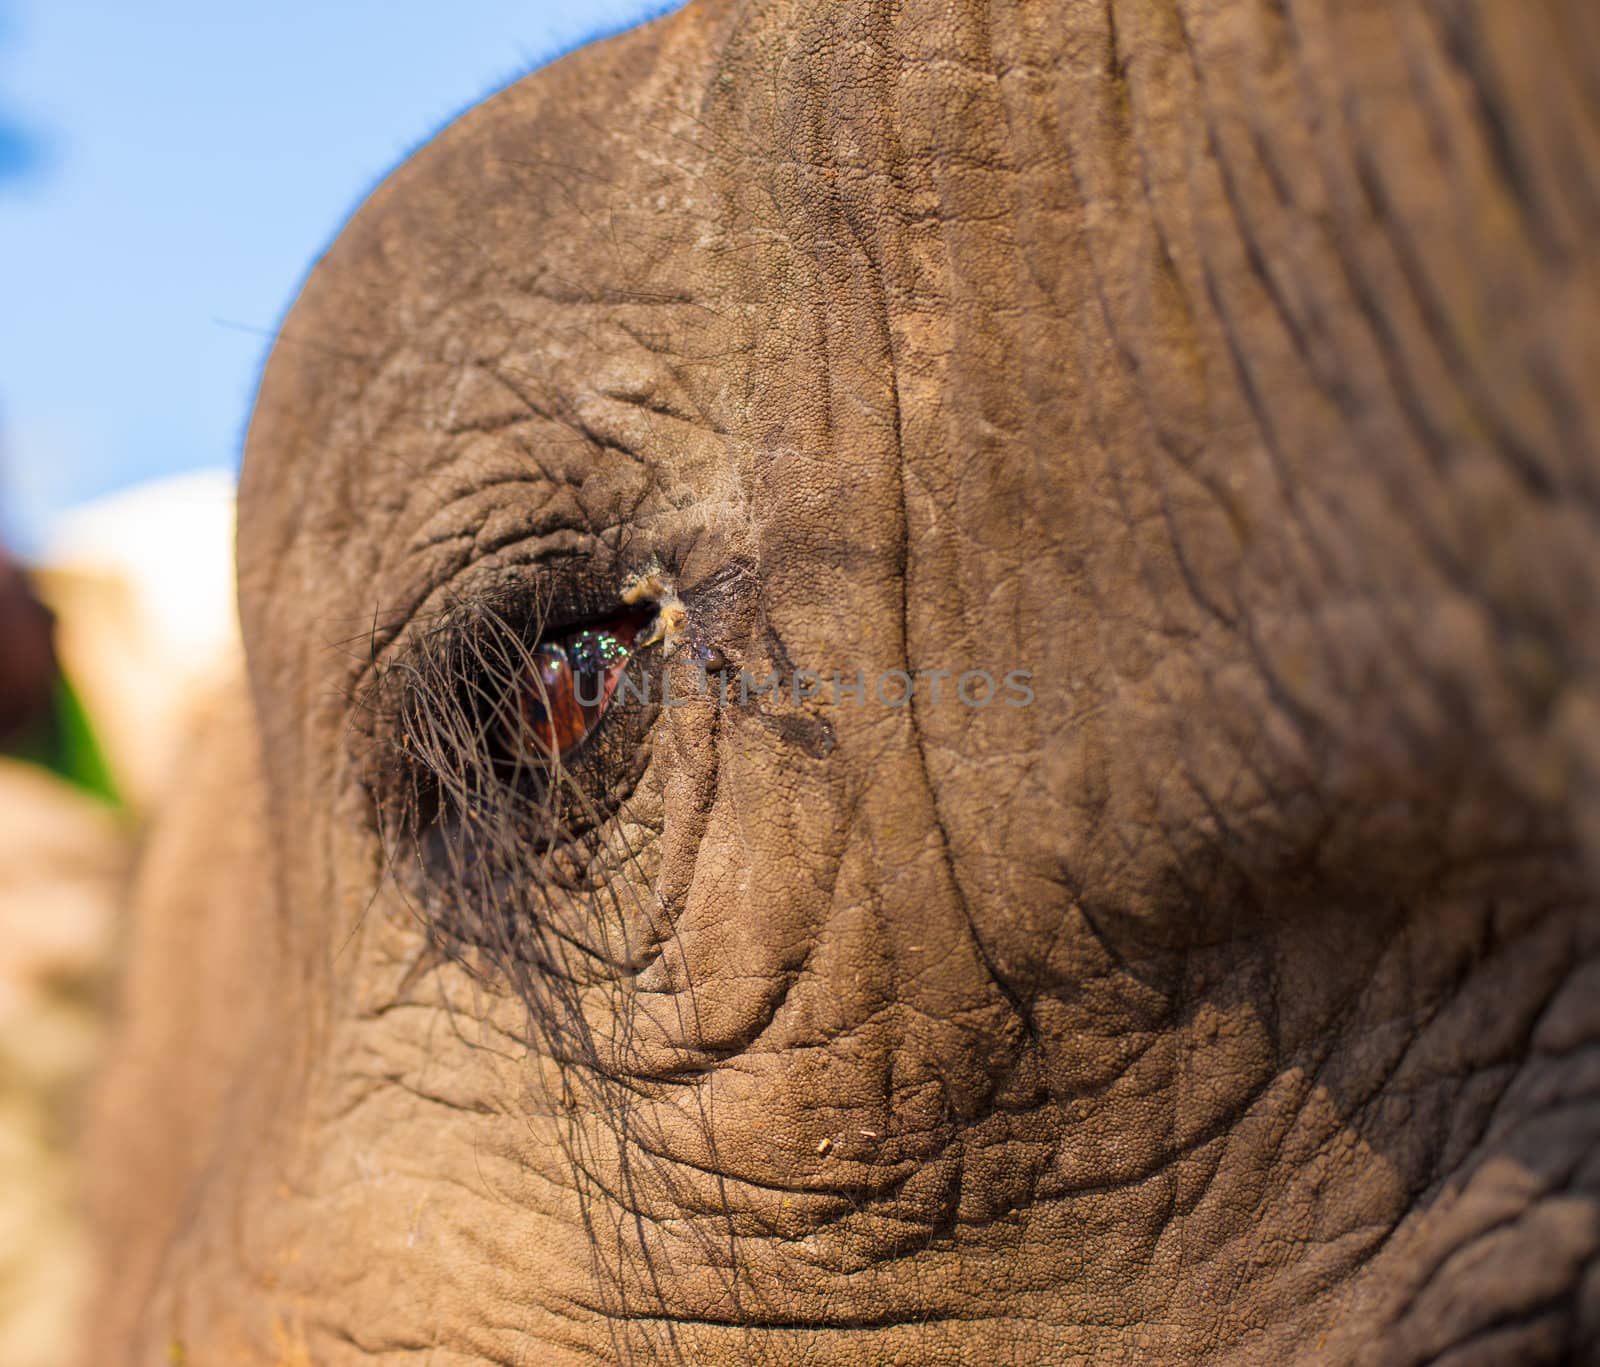 African bush elephant (Loxodonta africana) eye up close